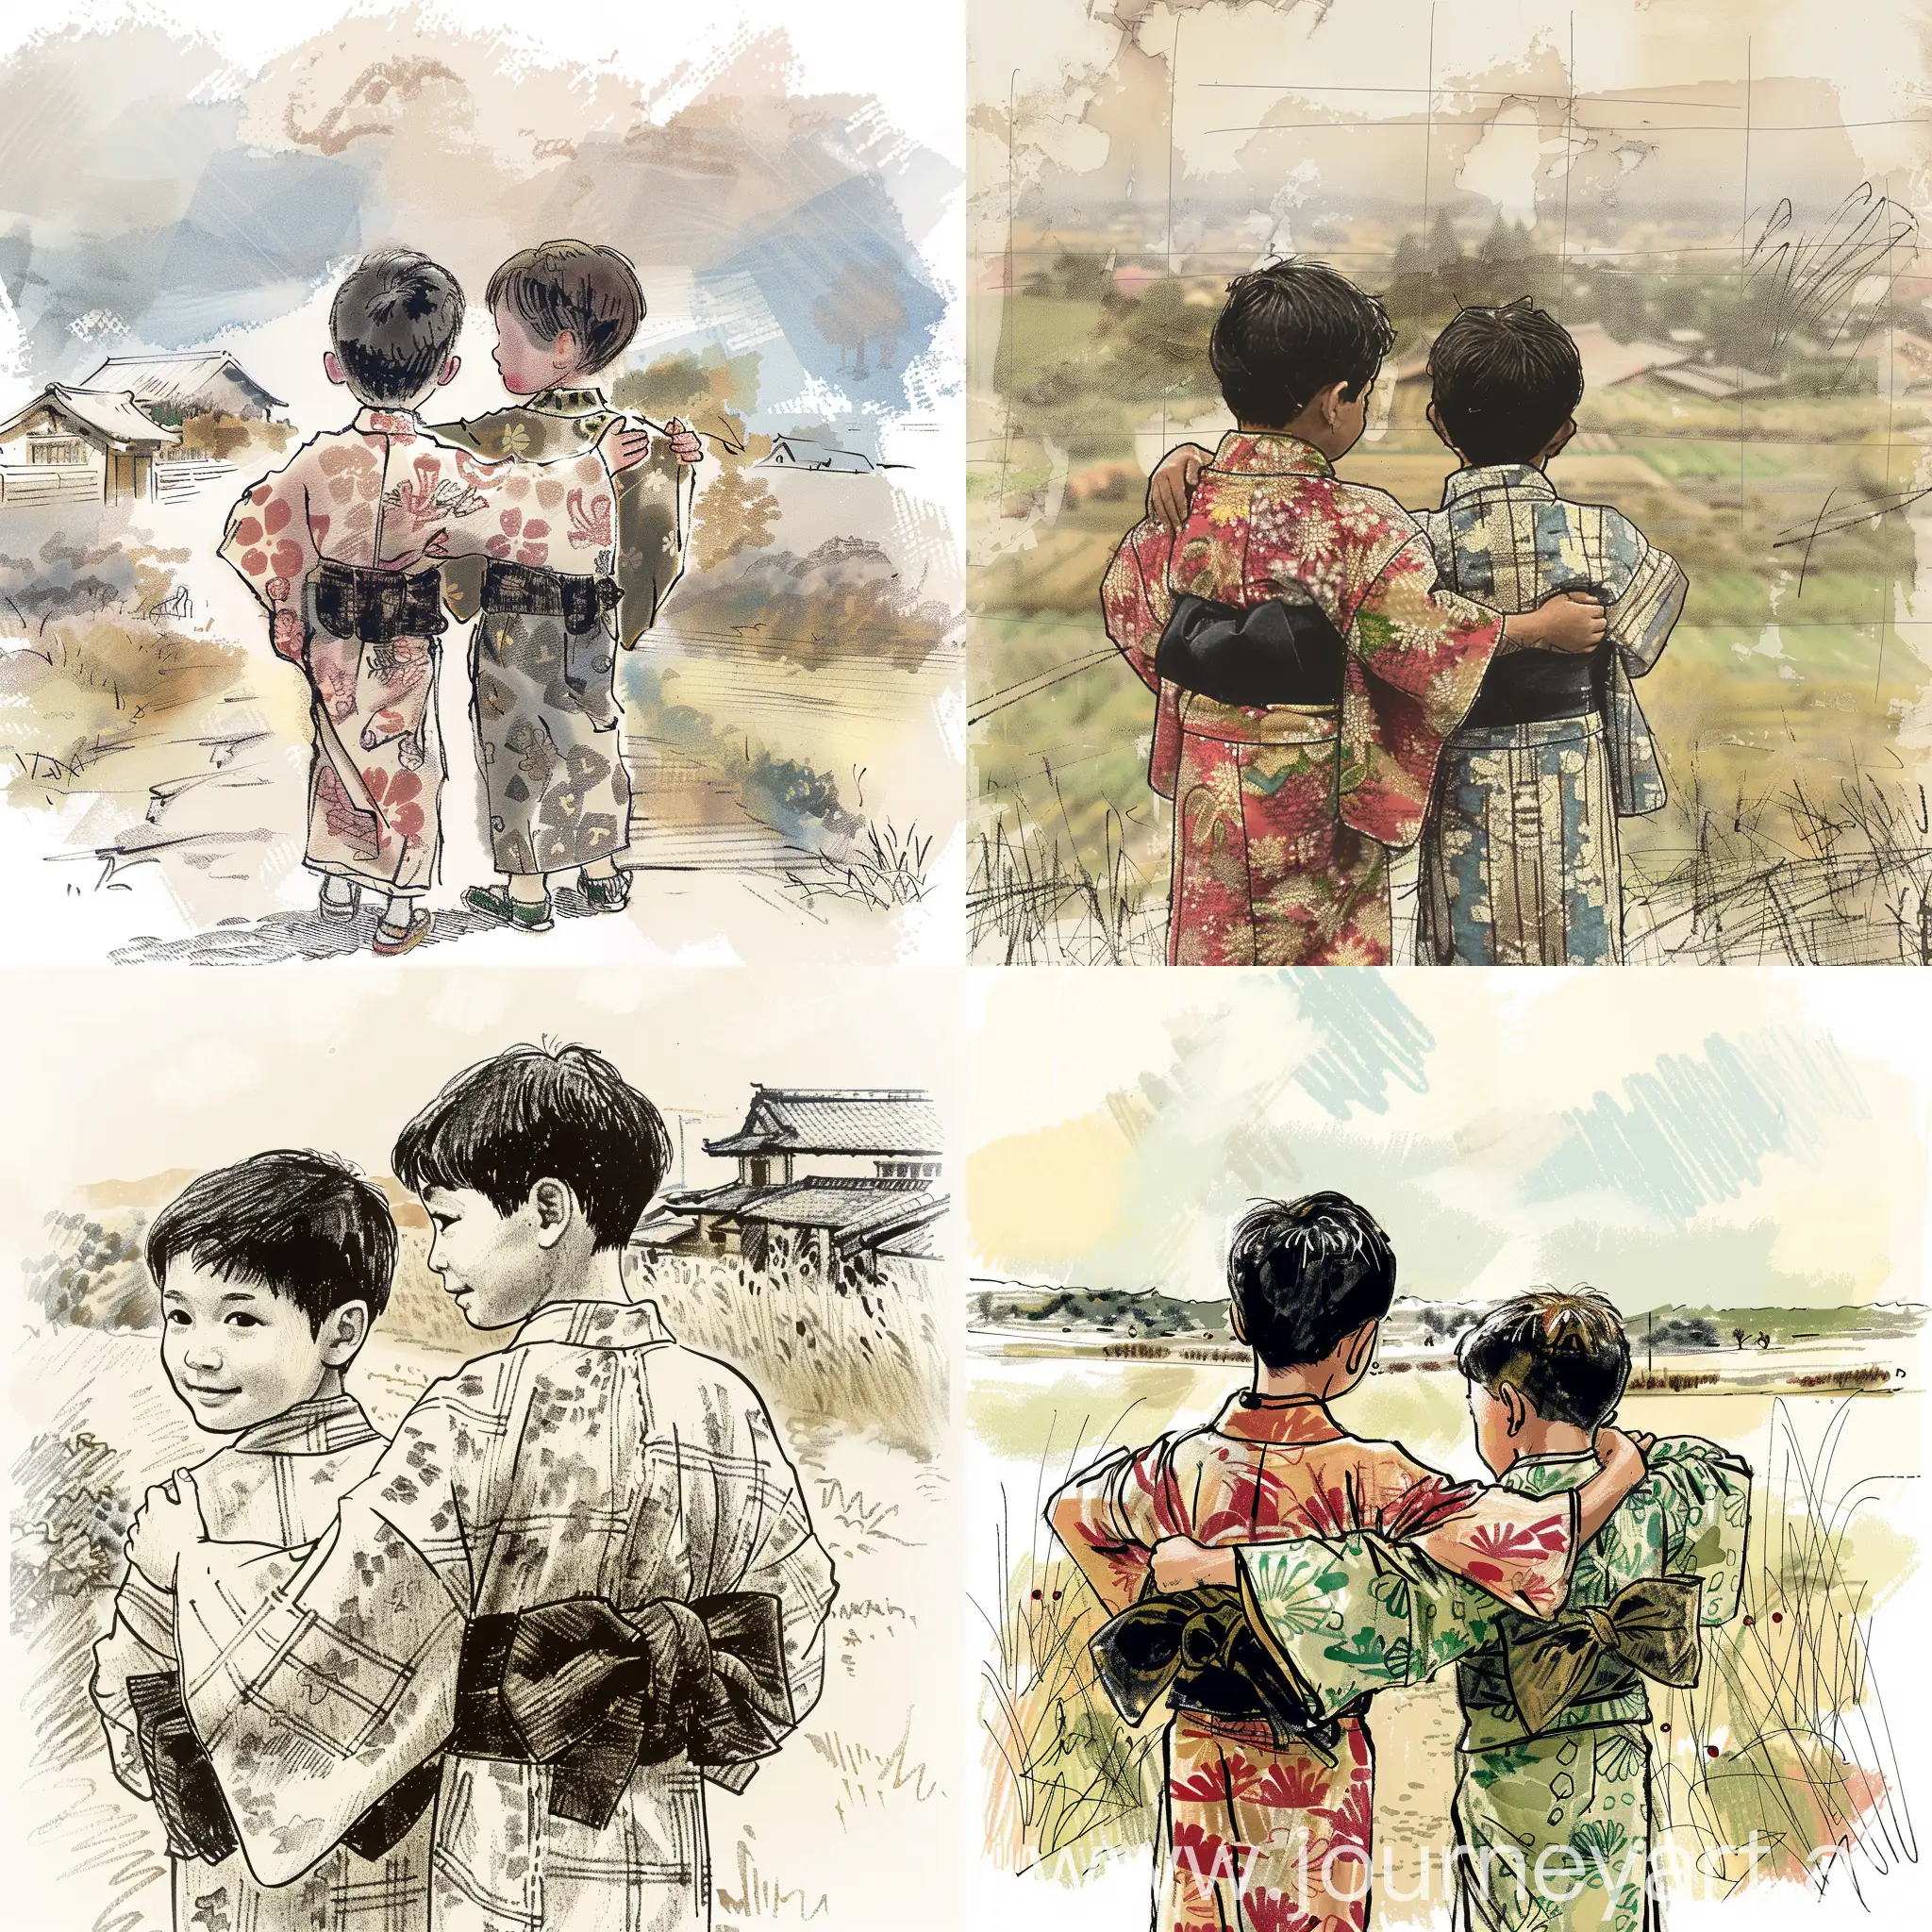 Japanese-Children-Embrace-in-Kimonos-Amidst-Whimsical-Storytelling-Setting